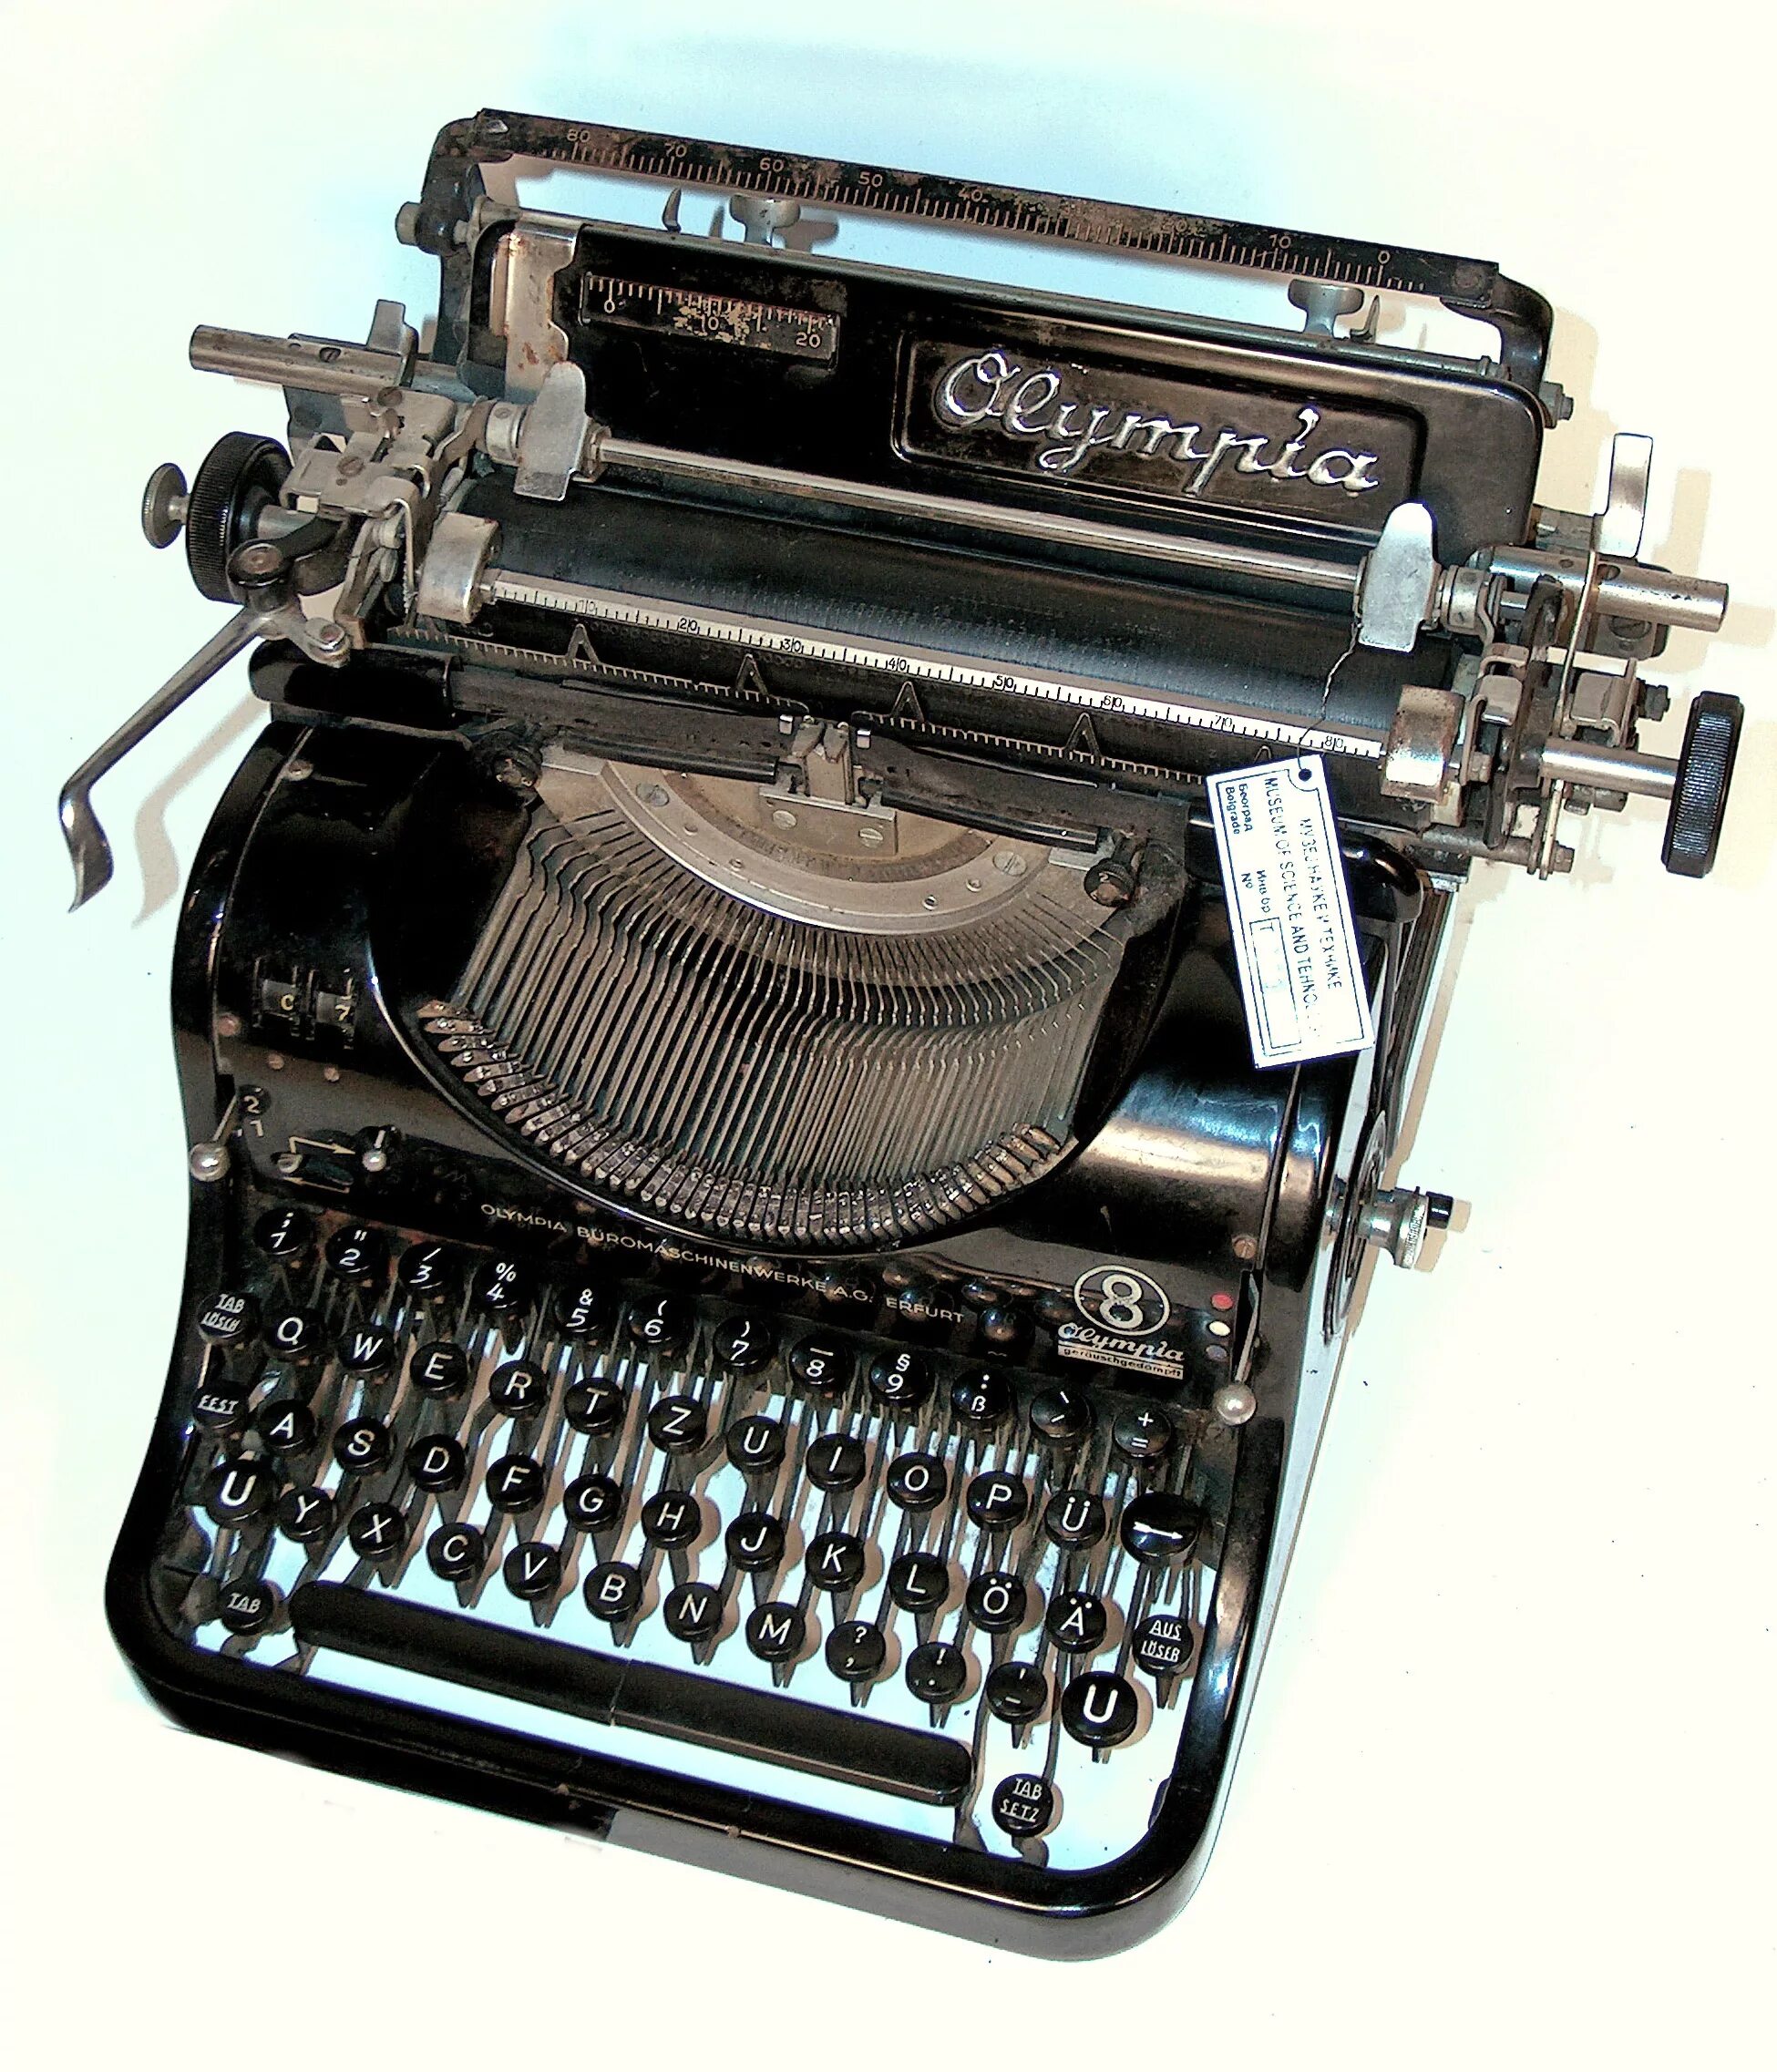 Модель 8 19. Печатная машинка Olympia 8. AEG Olympia Typewriter. Печатная машинка Olympia Mod 8 размер. Печатная машинка AEG Olympia.